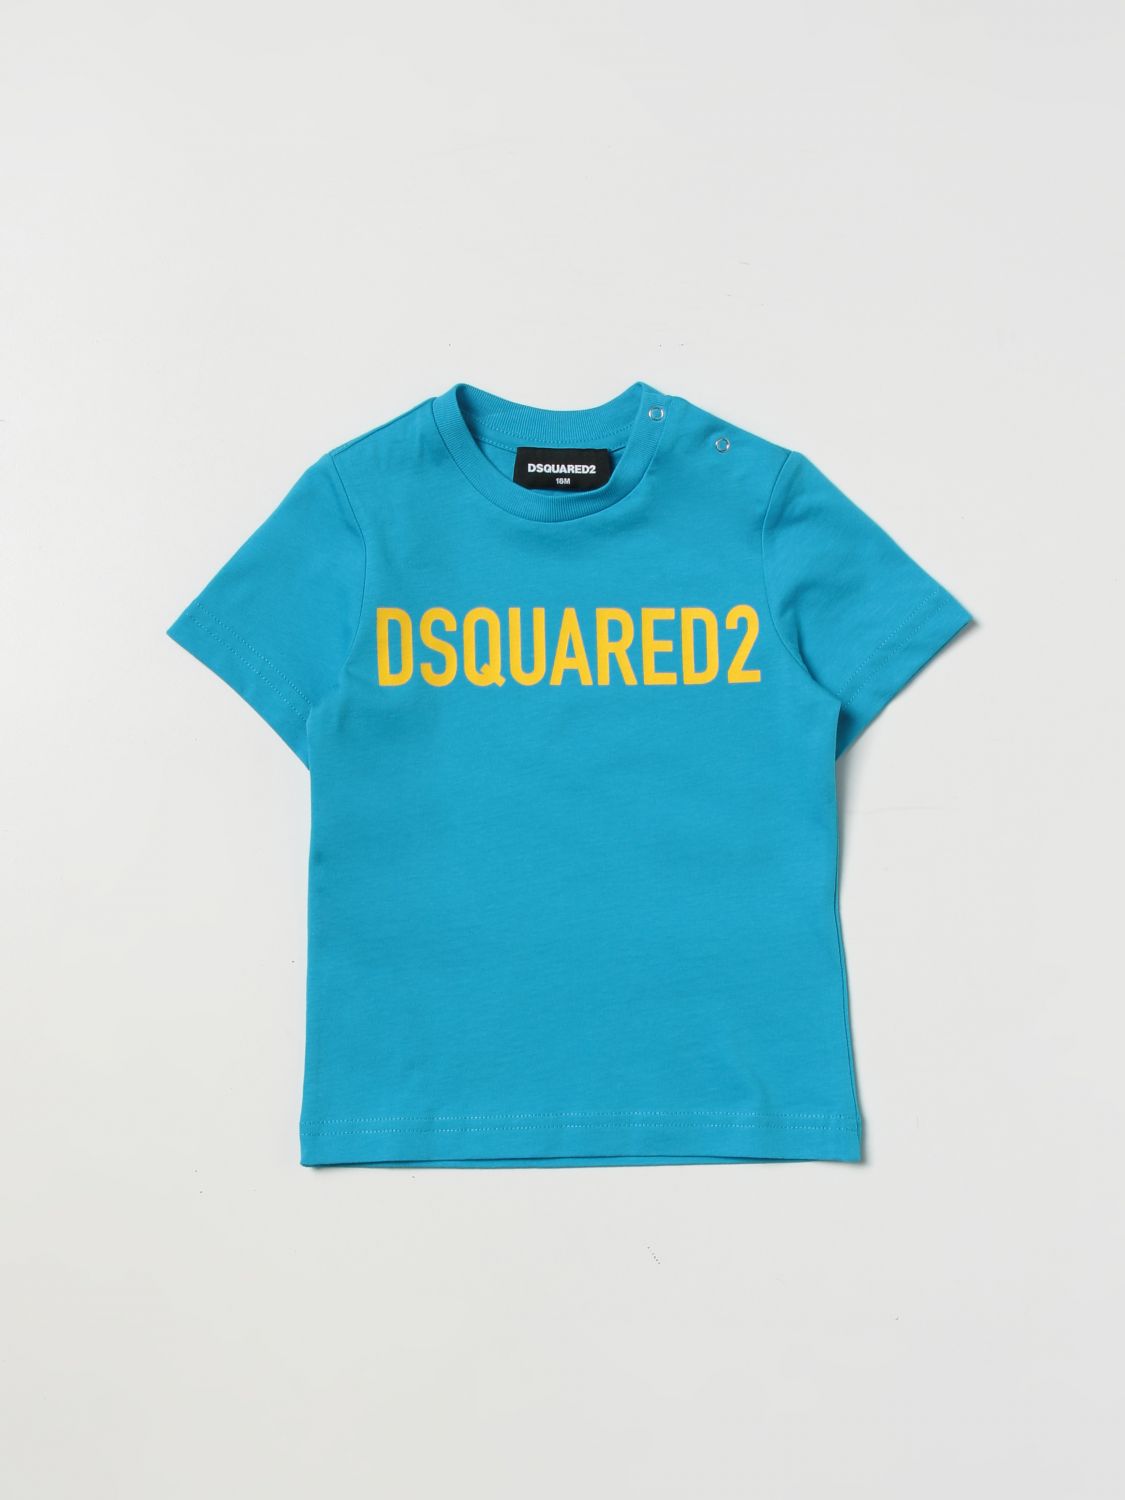 Dsquared2 Junior Babies' T-shirt  Kids Color Turquoise